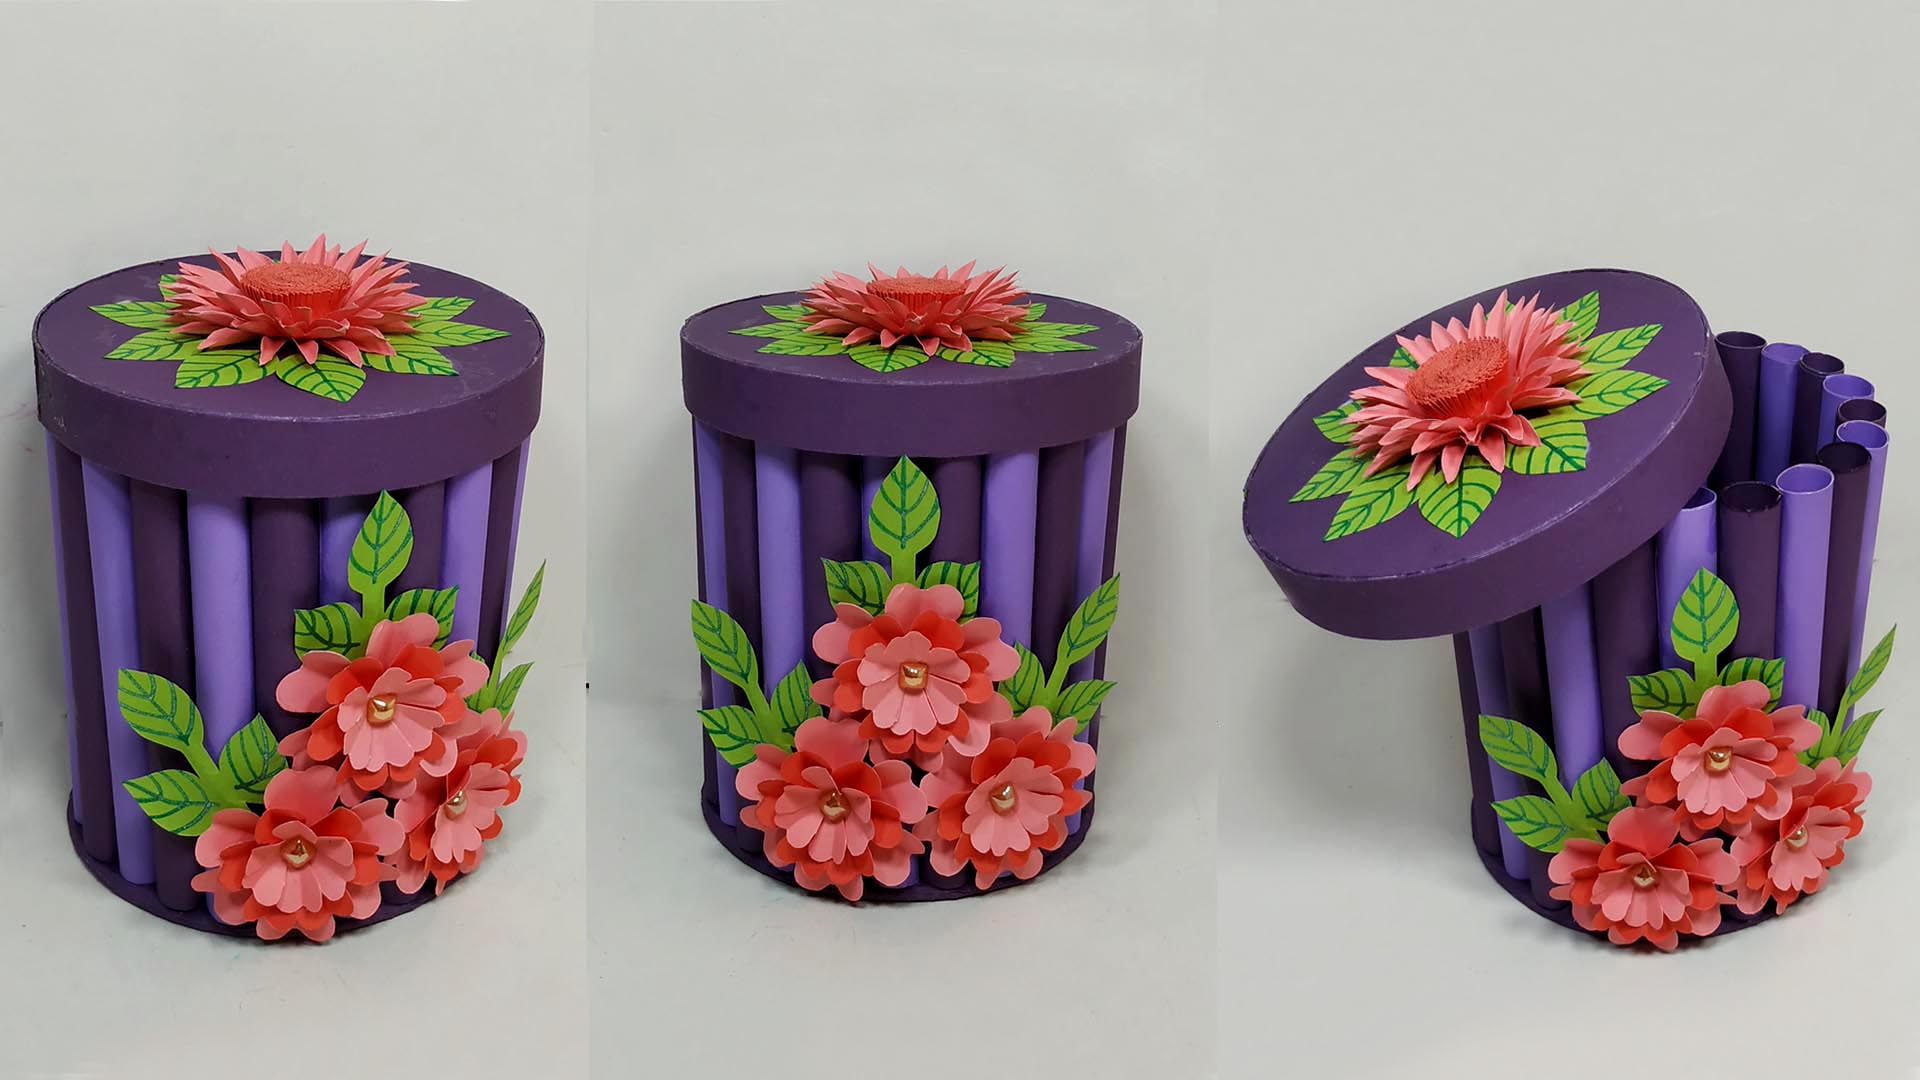 DIY Flower-Topped Gift Box